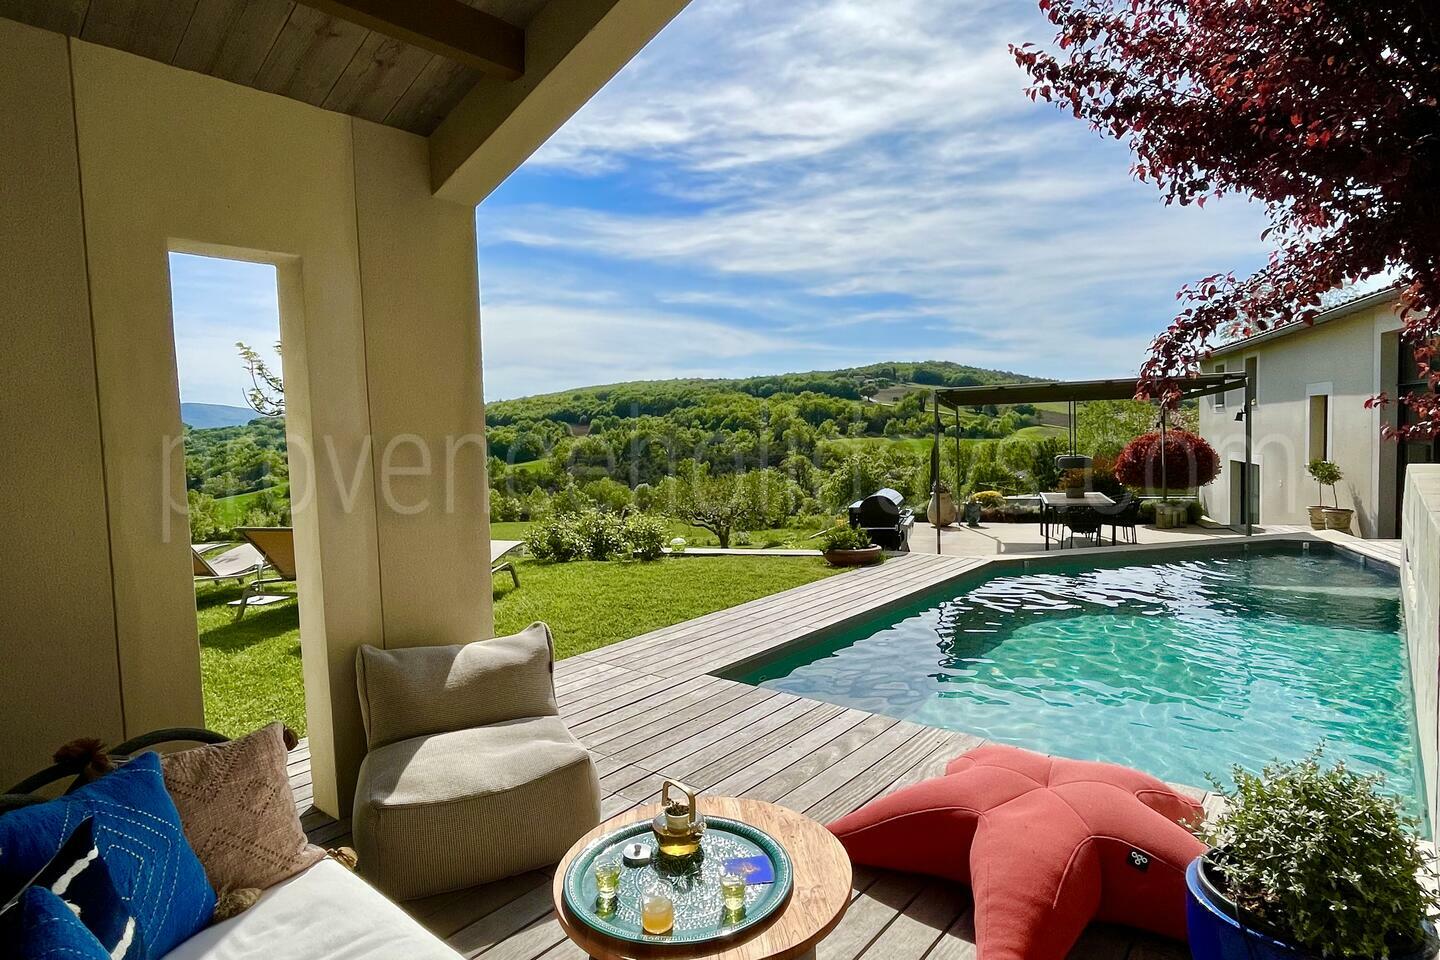 Location de vacances dans le Luberon avec piscine chauffée pour 8 personnes 2 - Le Mas du Vallon: Villa: Exterior